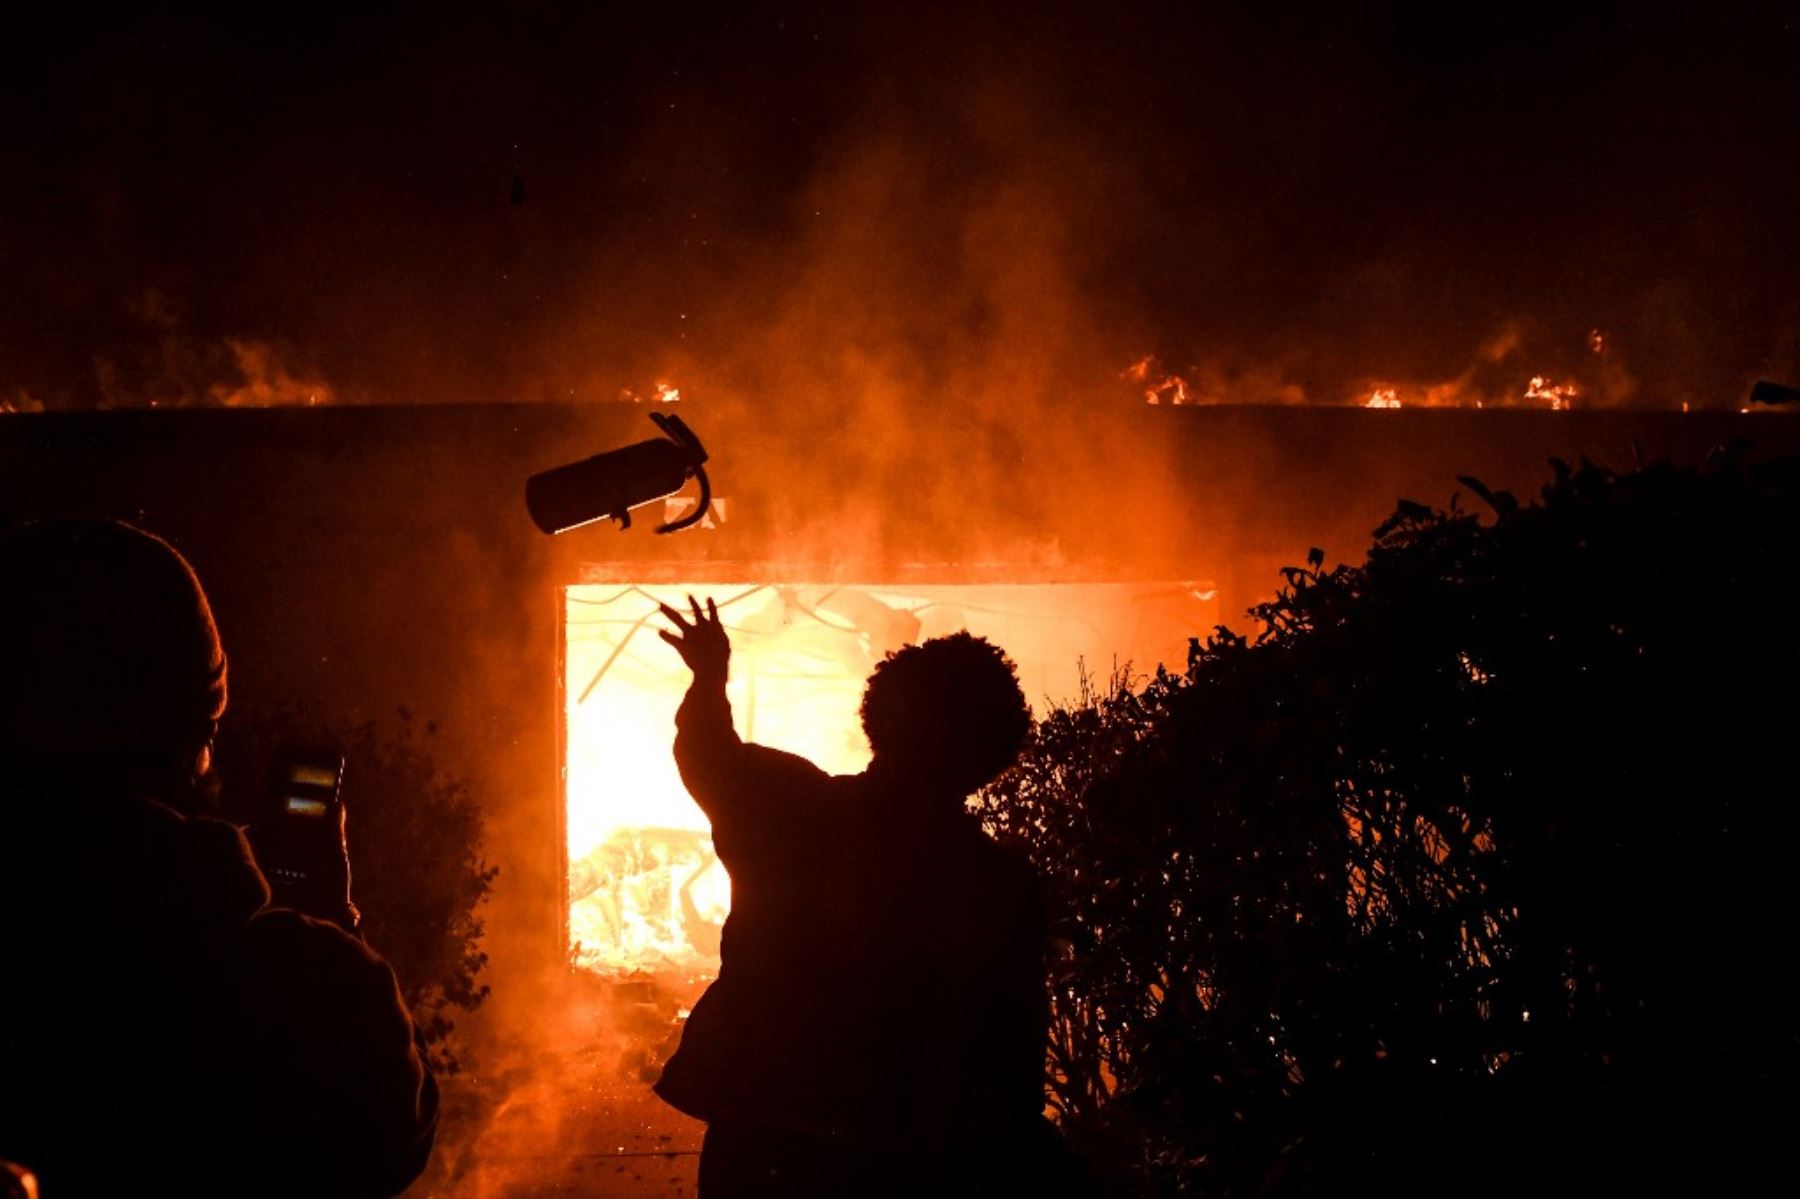 Un manifestante arroja un extintor de incendios en un edificio en llamas durante una manifestación en Minneapolis, Minnesota, el 29 de mayo de 2020, durante protesta por la muerte de George Floyd. Foto: AFP